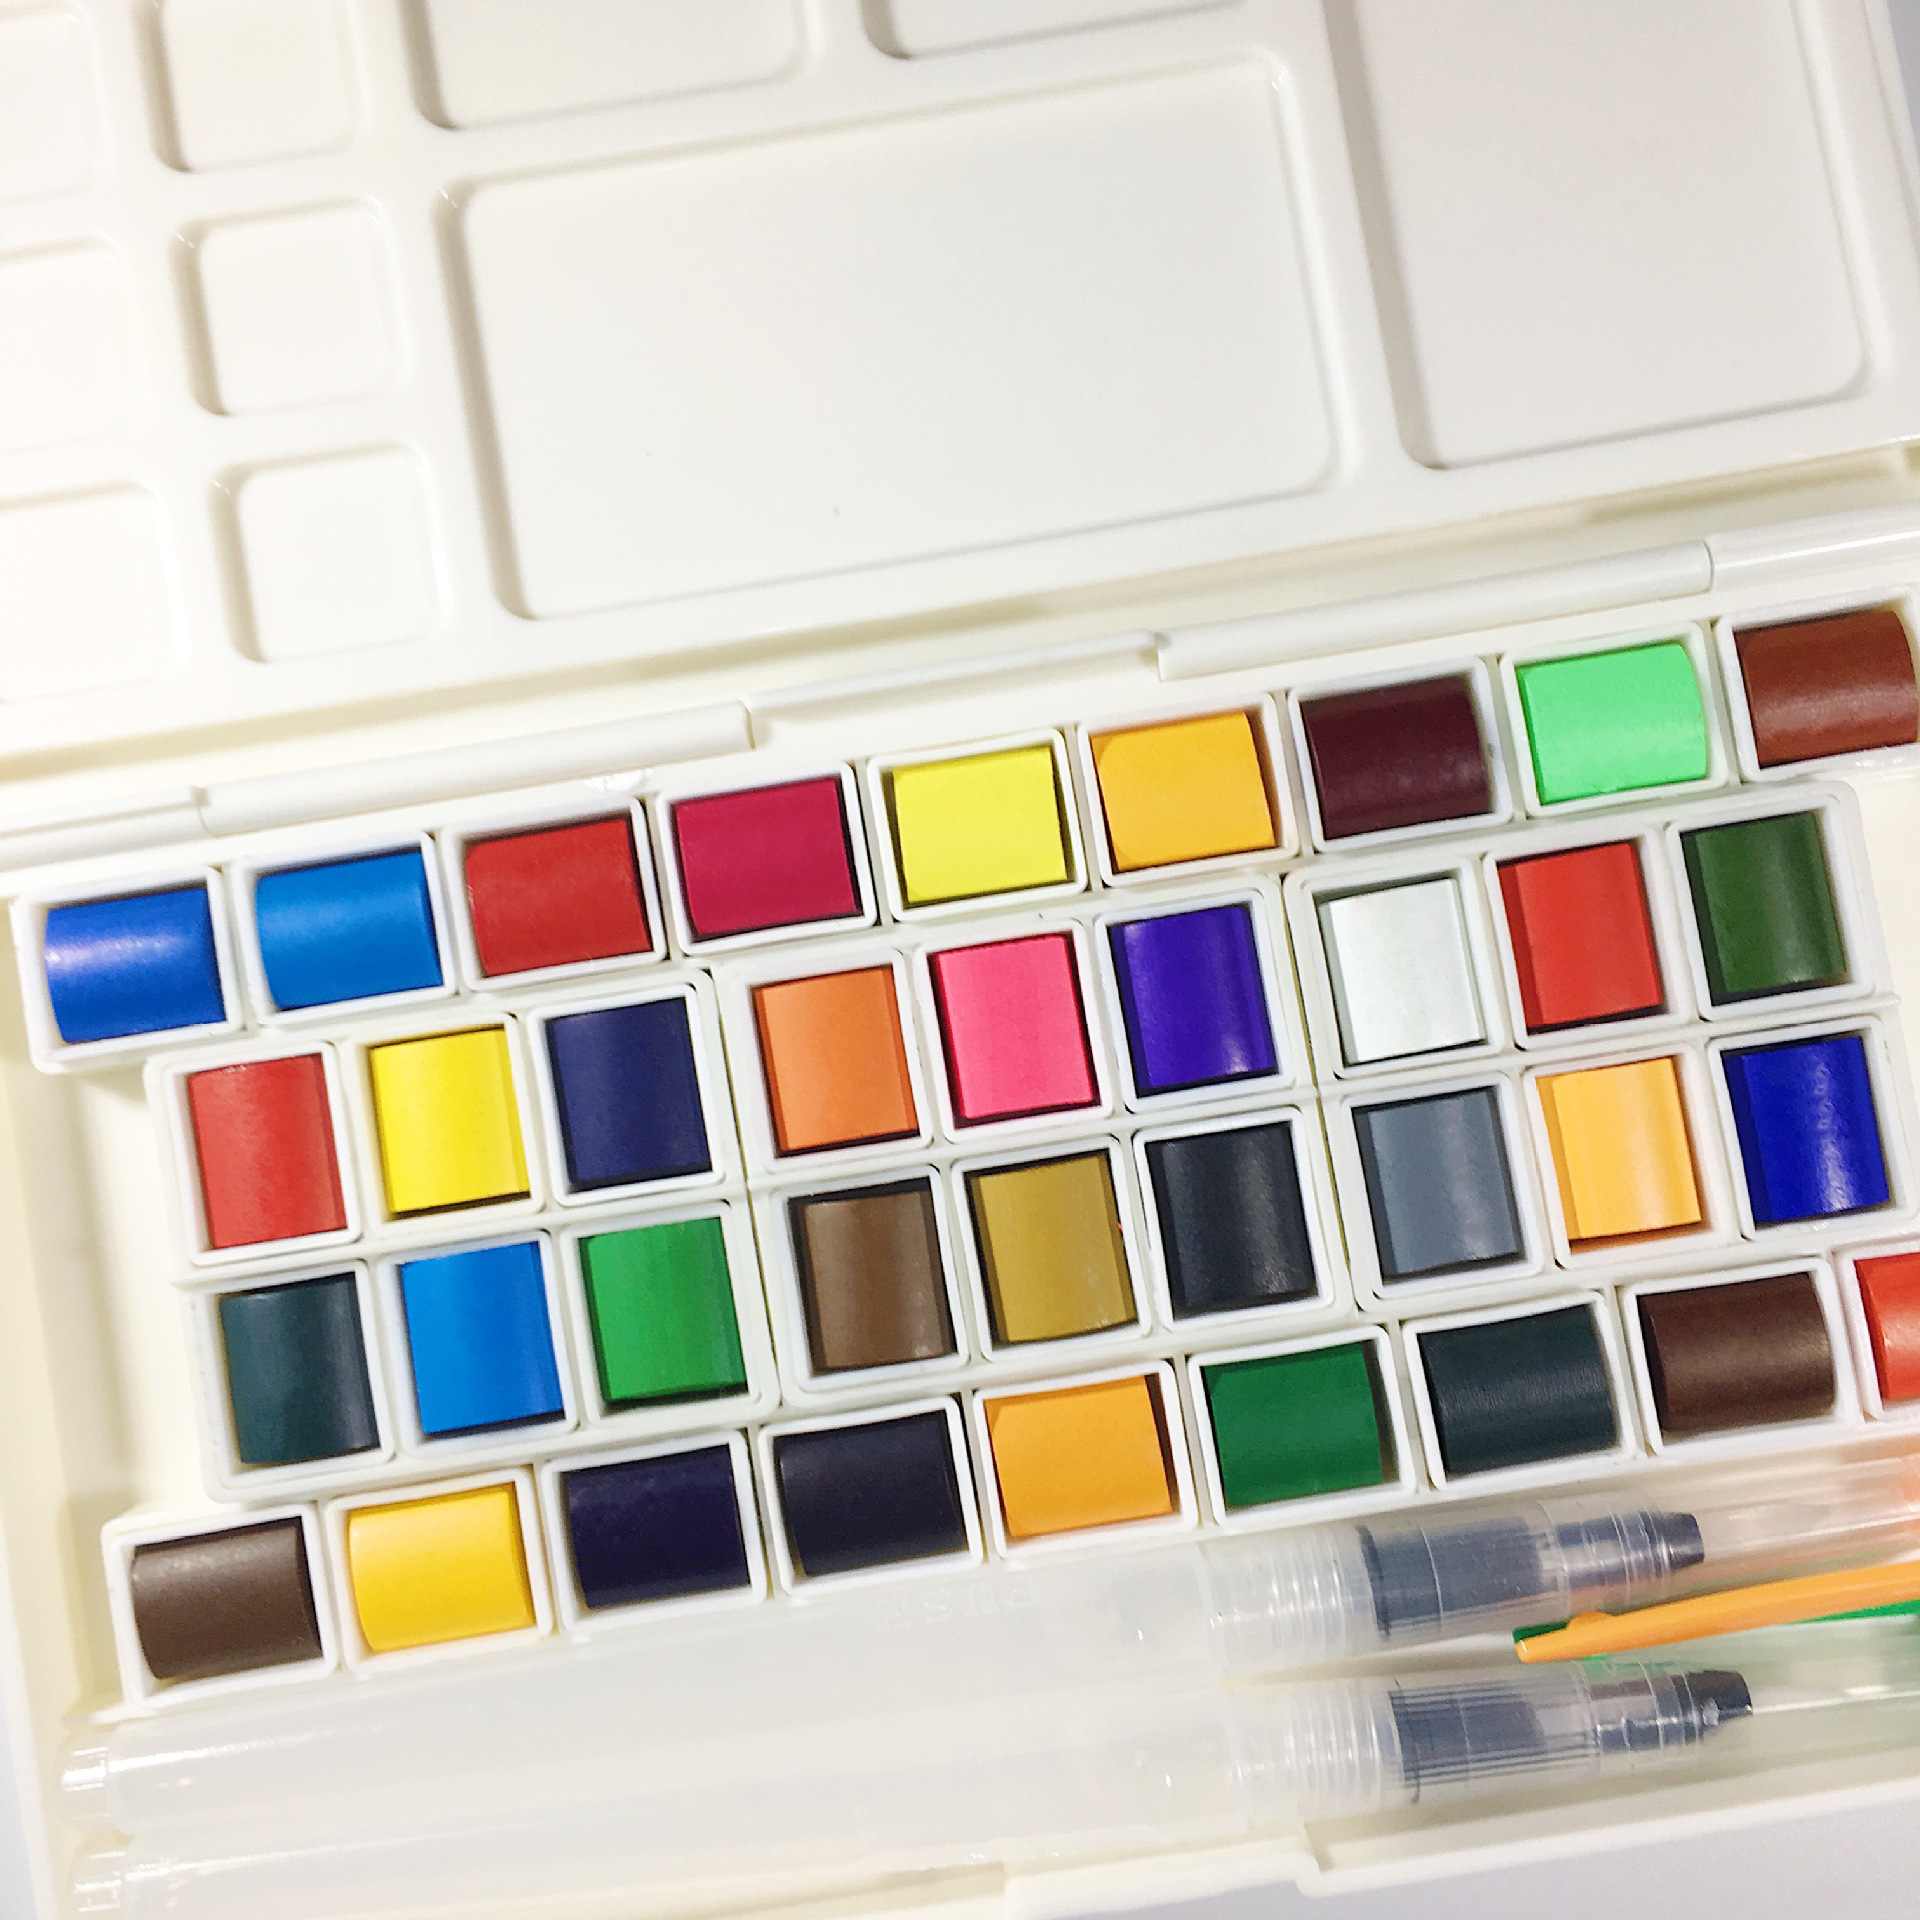 三十六色颜料盒排序图图片